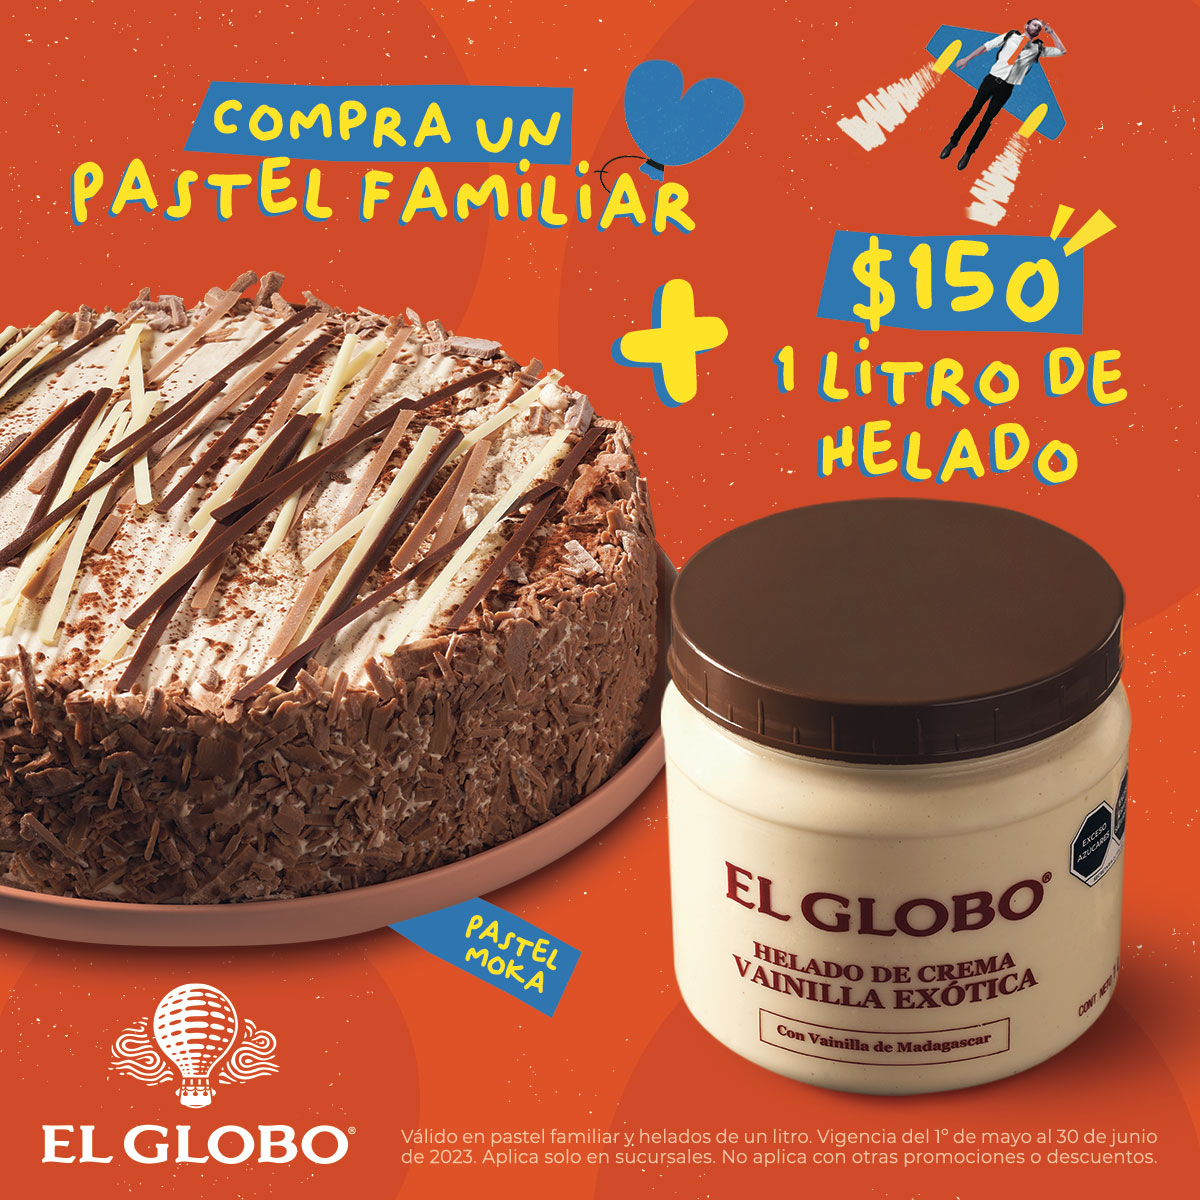 Pastelerías El Globo (@ElGloboOficial) / Twitter